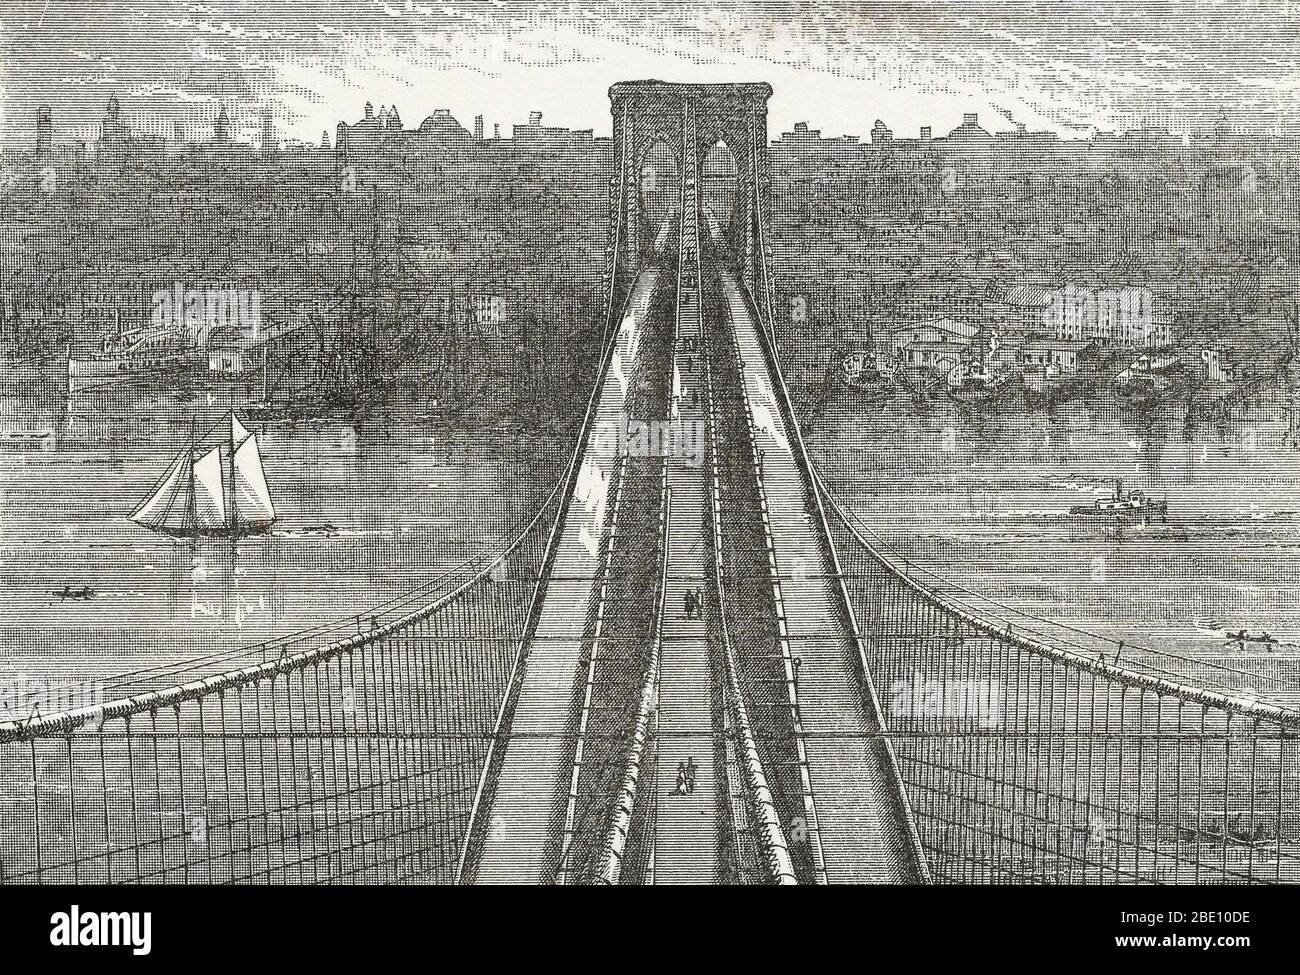 La vista dalla cima della Brooklyn Tower, che guarda verso il basso sul ponte di Brooklyn e verso New York. Da un opuscolo non identificato sul ponte, 1883. Il ponte di Brooklyn è uno dei più antichi ponti sospesi degli Stati Uniti. Completato nel 1883, collega i quartieri di Manhattan e Brooklyn attraverso l'East River. Con una distanza principale di 1,595.5 metri, è stato il ponte sospeso più lungo del mondo dalla sua apertura fino al 1903, e il primo ponte sospeso in acciaio. Originariamente chiamato New York e Ponte di Brooklyn e come Ponte sul Fiume Est, era formalmente nam Foto Stock